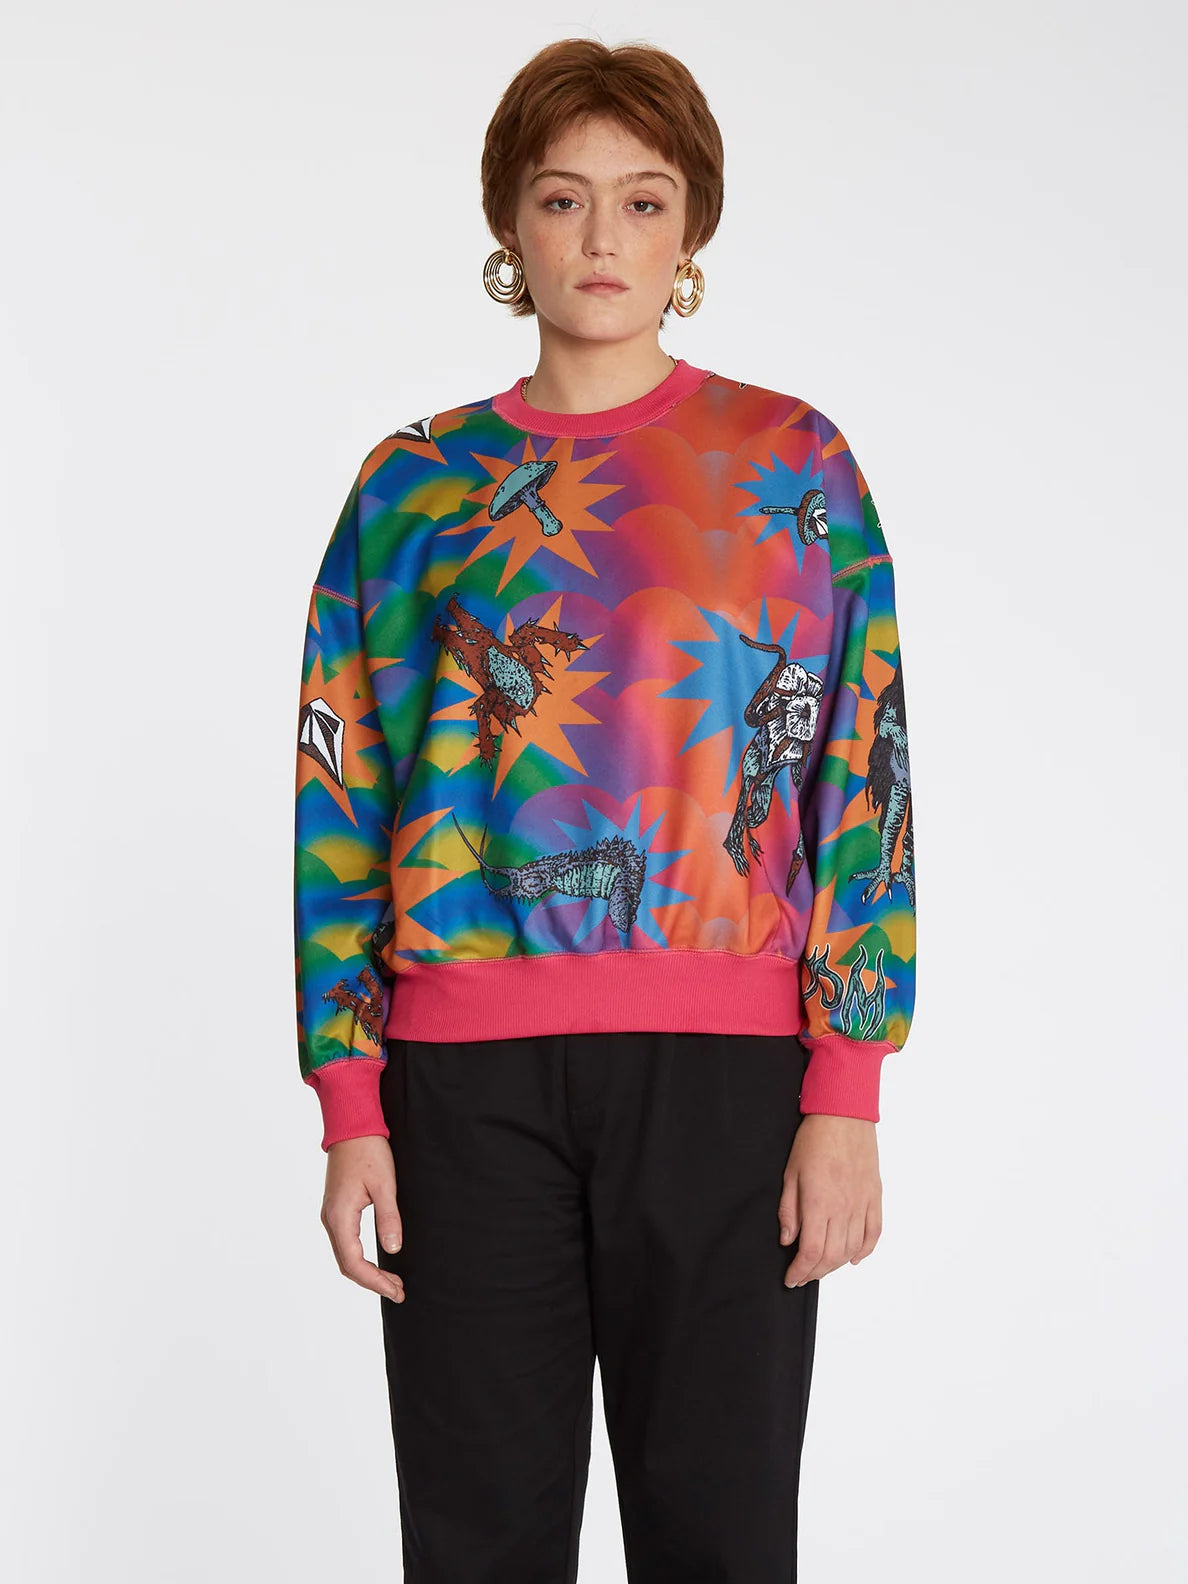 Volcom Chrissie Abbott x French Crew Mädchen Sweatshirt Multi | Damen-Sweatshirts | Meistverkaufte Produkte | Neue Produkte | Neueste Produkte | Sammlung_Zalando | Volcom-Shop | surfdevils.com